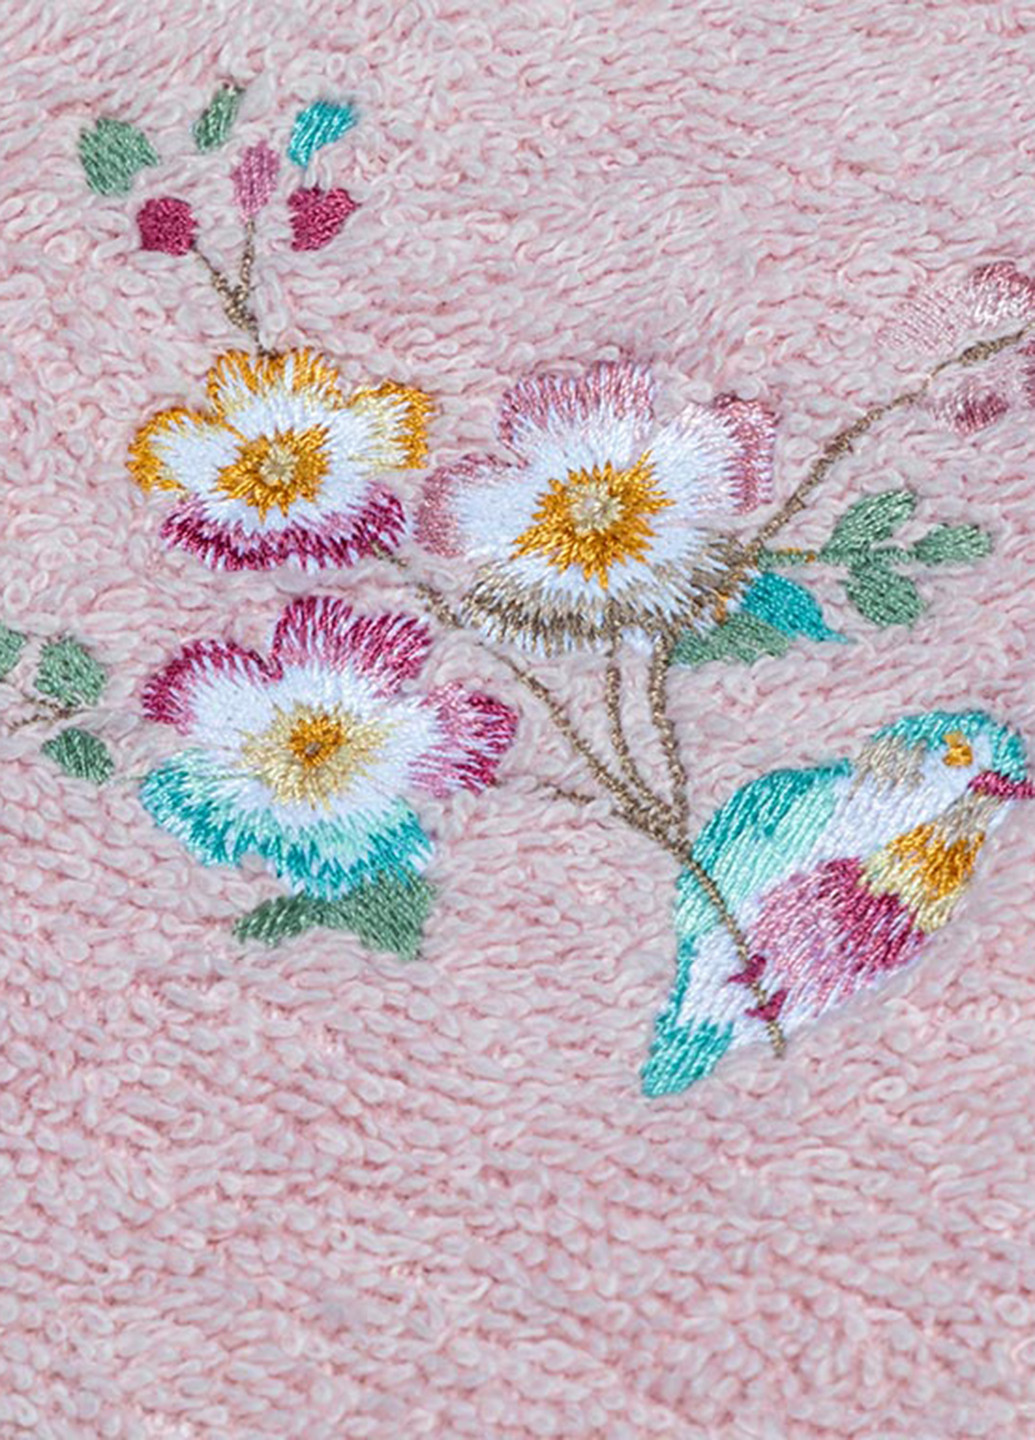 English Home полотенце flower love (2 шт.) 50х76 см, 30х40 см однотонный розовый производство - Турция